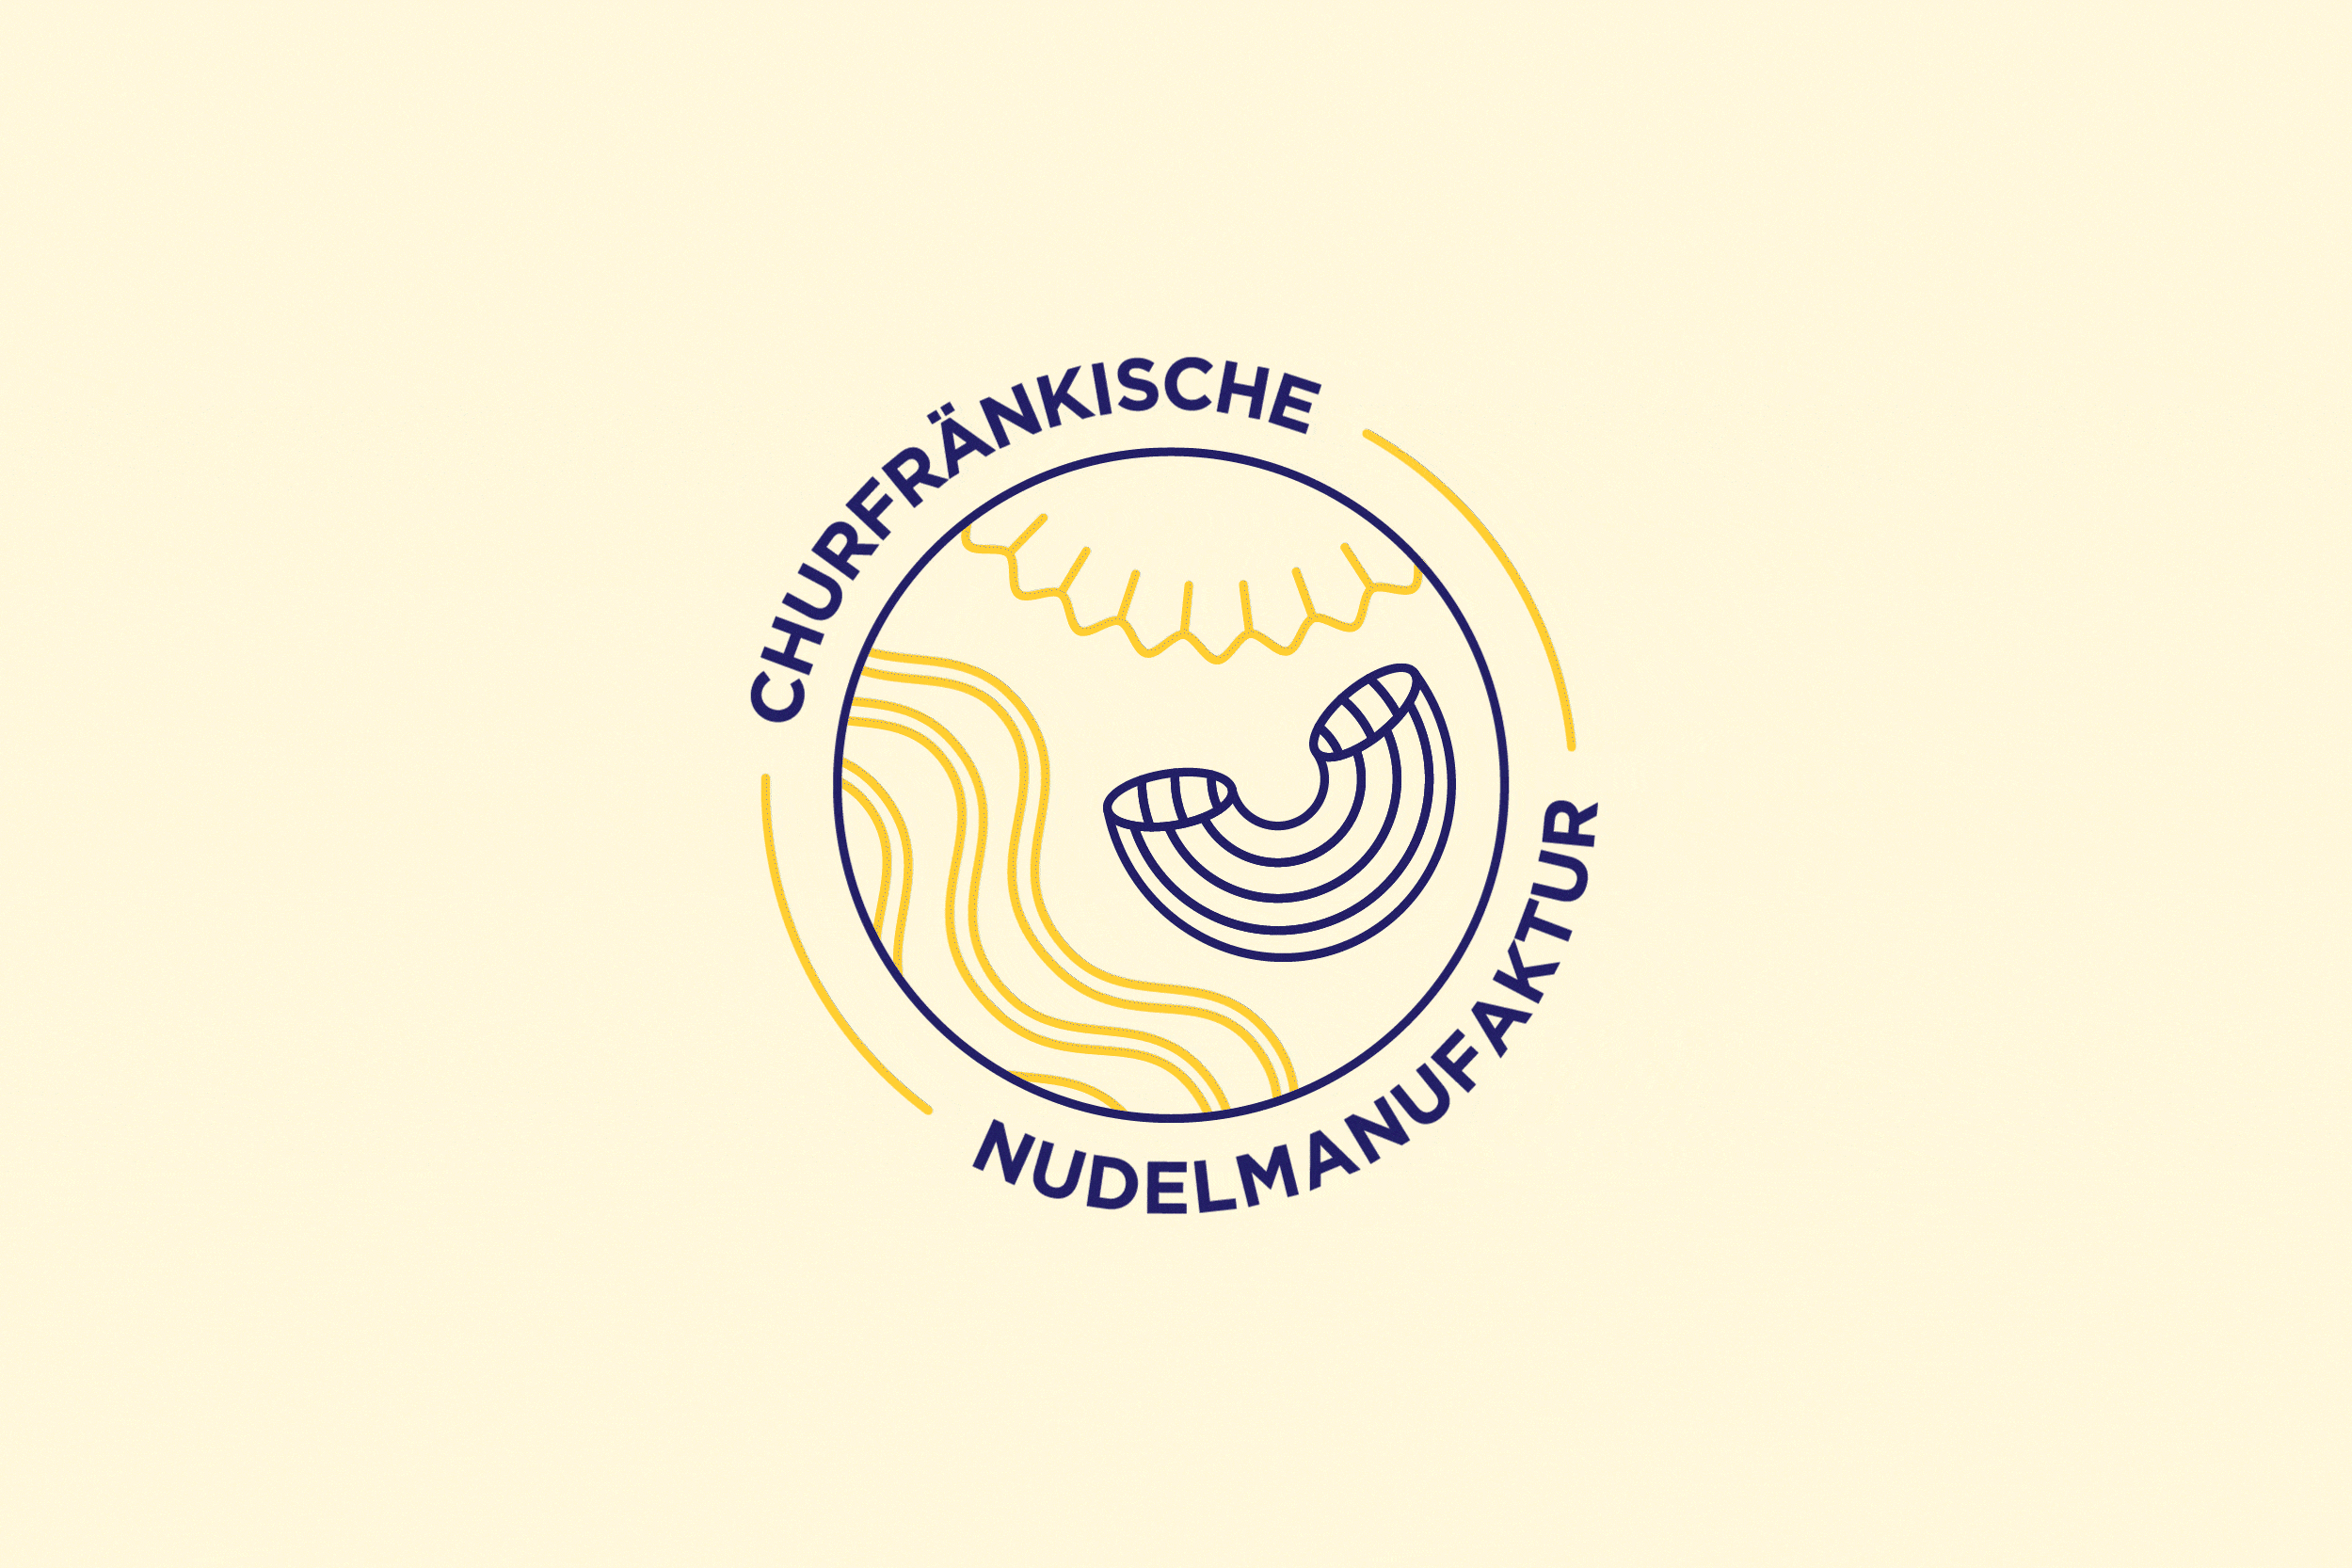 Churfränkische Nudelmanufaktur_Coming Soon_s